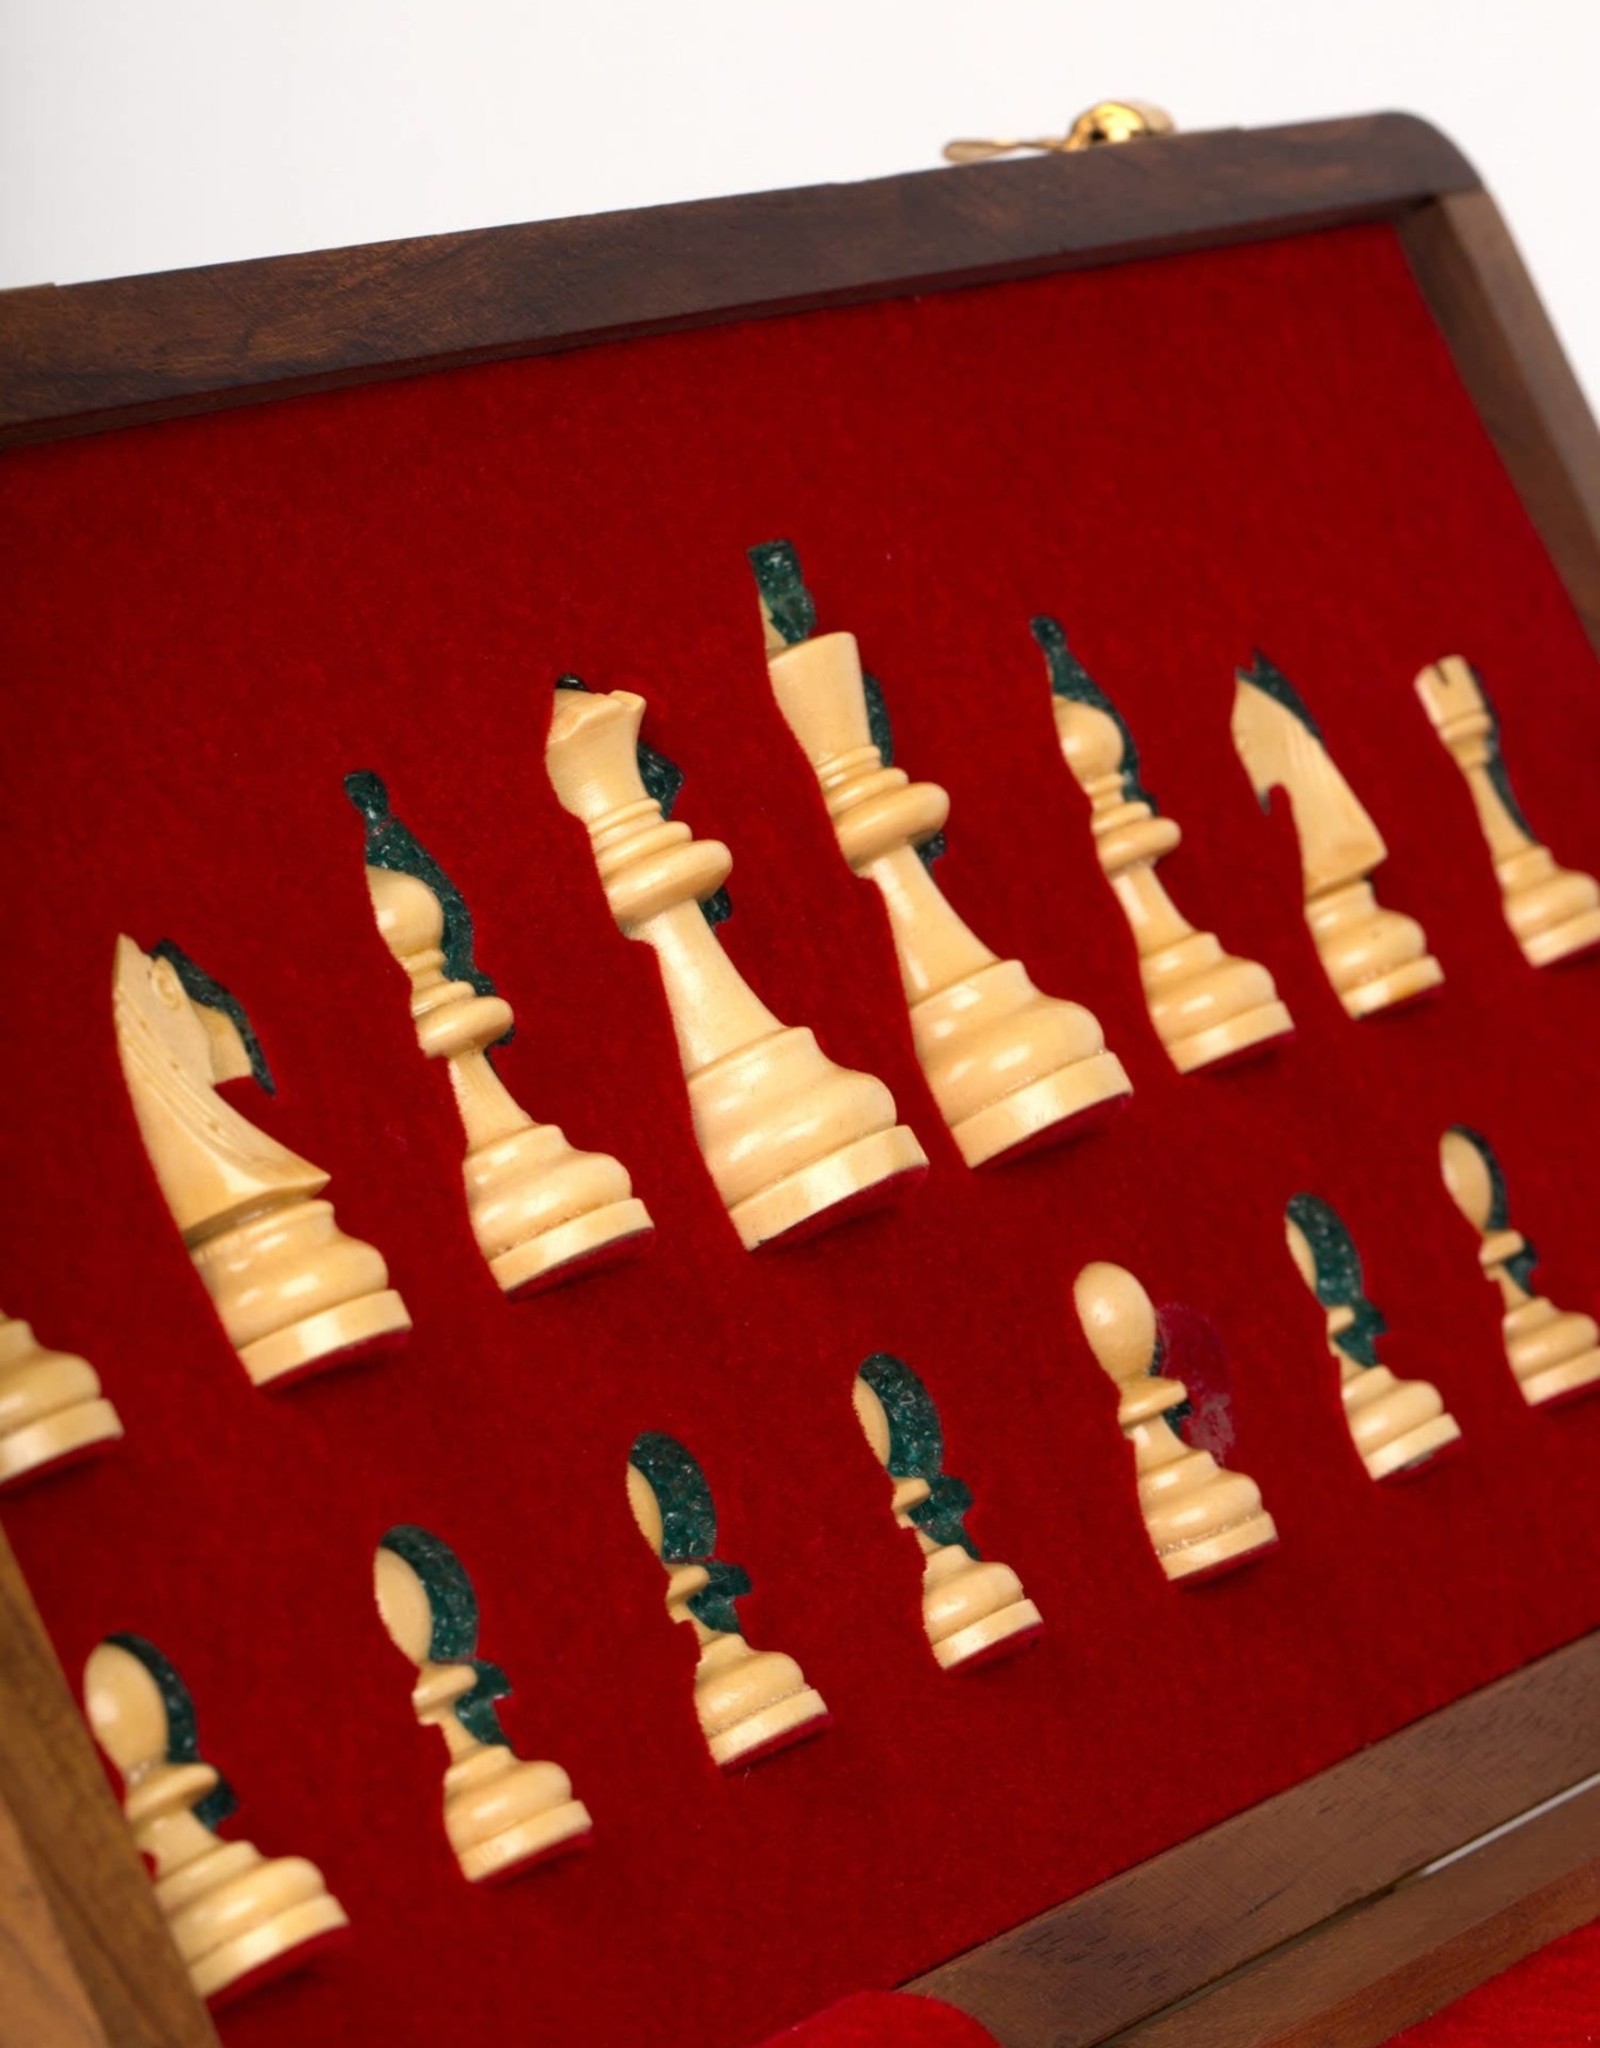 Ten Thousand Villages Store Away Chess Set